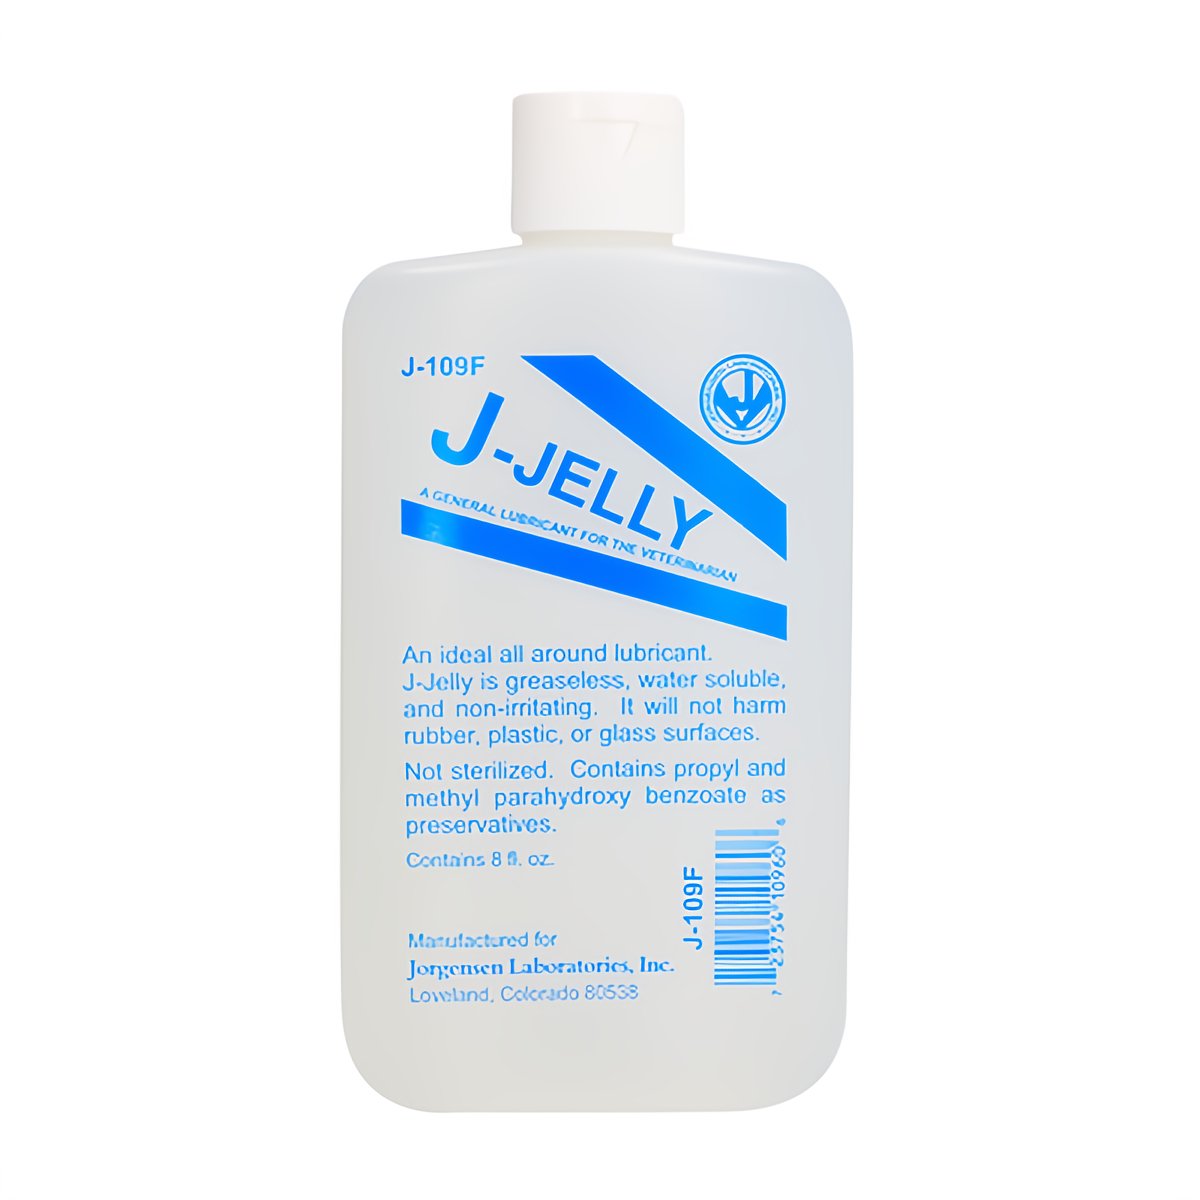 J - Jelly - Jelly Lubricant - EroticToyzProducten,Veilige Seks, Verzorging Hulp,Glijmiddelen,Anale Glijmiddelen,,GeslachtsneutraalJ - Lubes